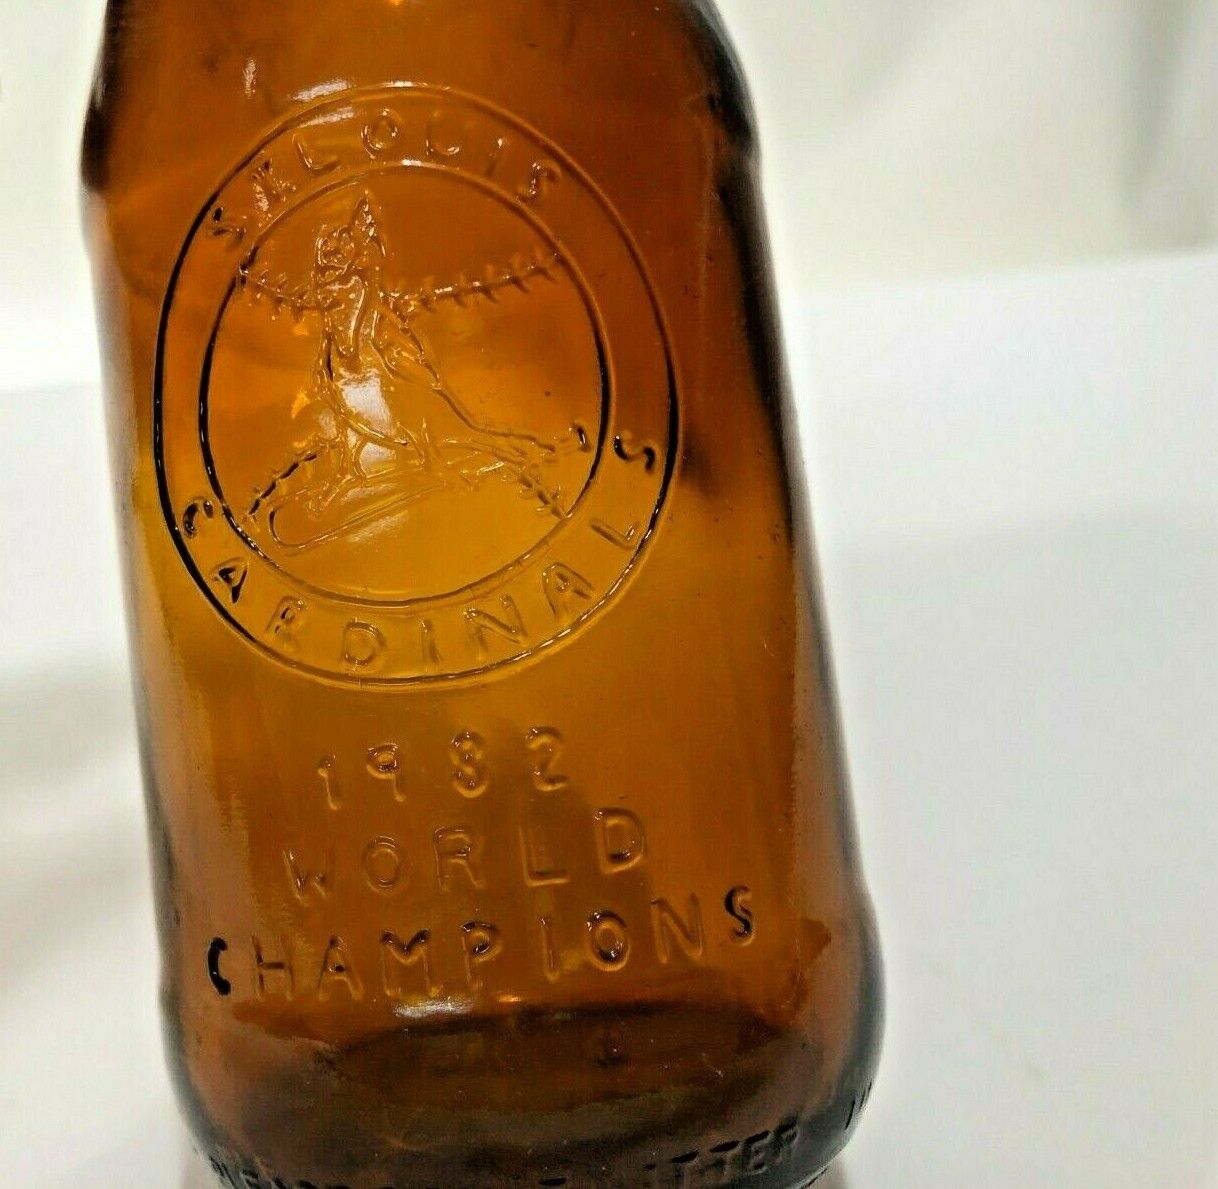 1982 St. Louis Cardinals World Champion Budweiser Beer Bottle